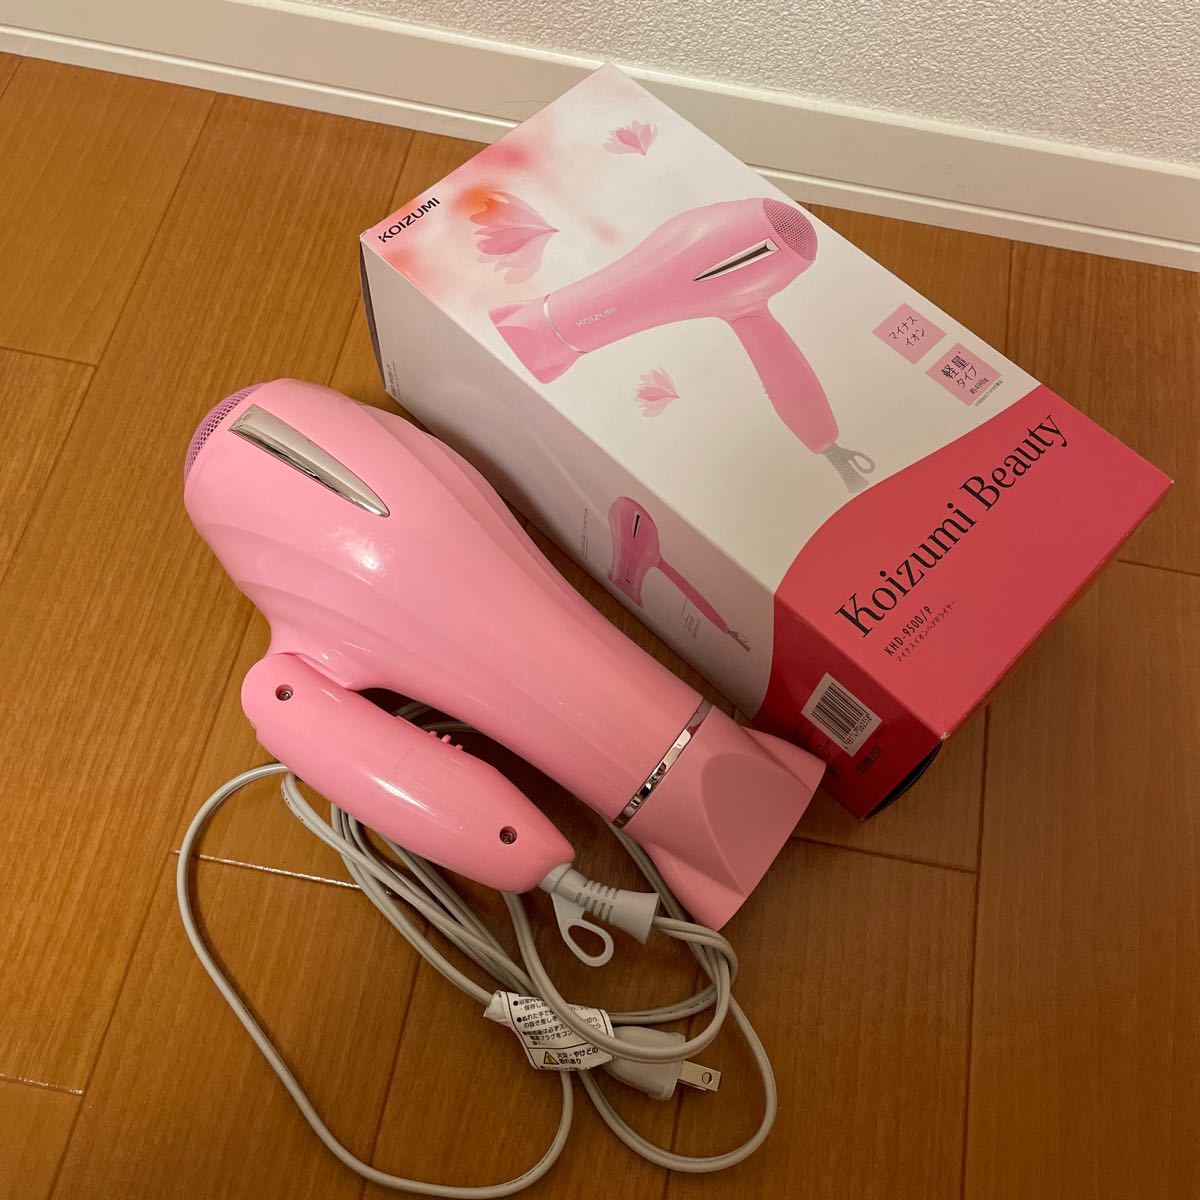 コイズミ マイナスイオンヘアドライヤー KHD-9500/P ピンク 【ビックカメラグループオリジナル】